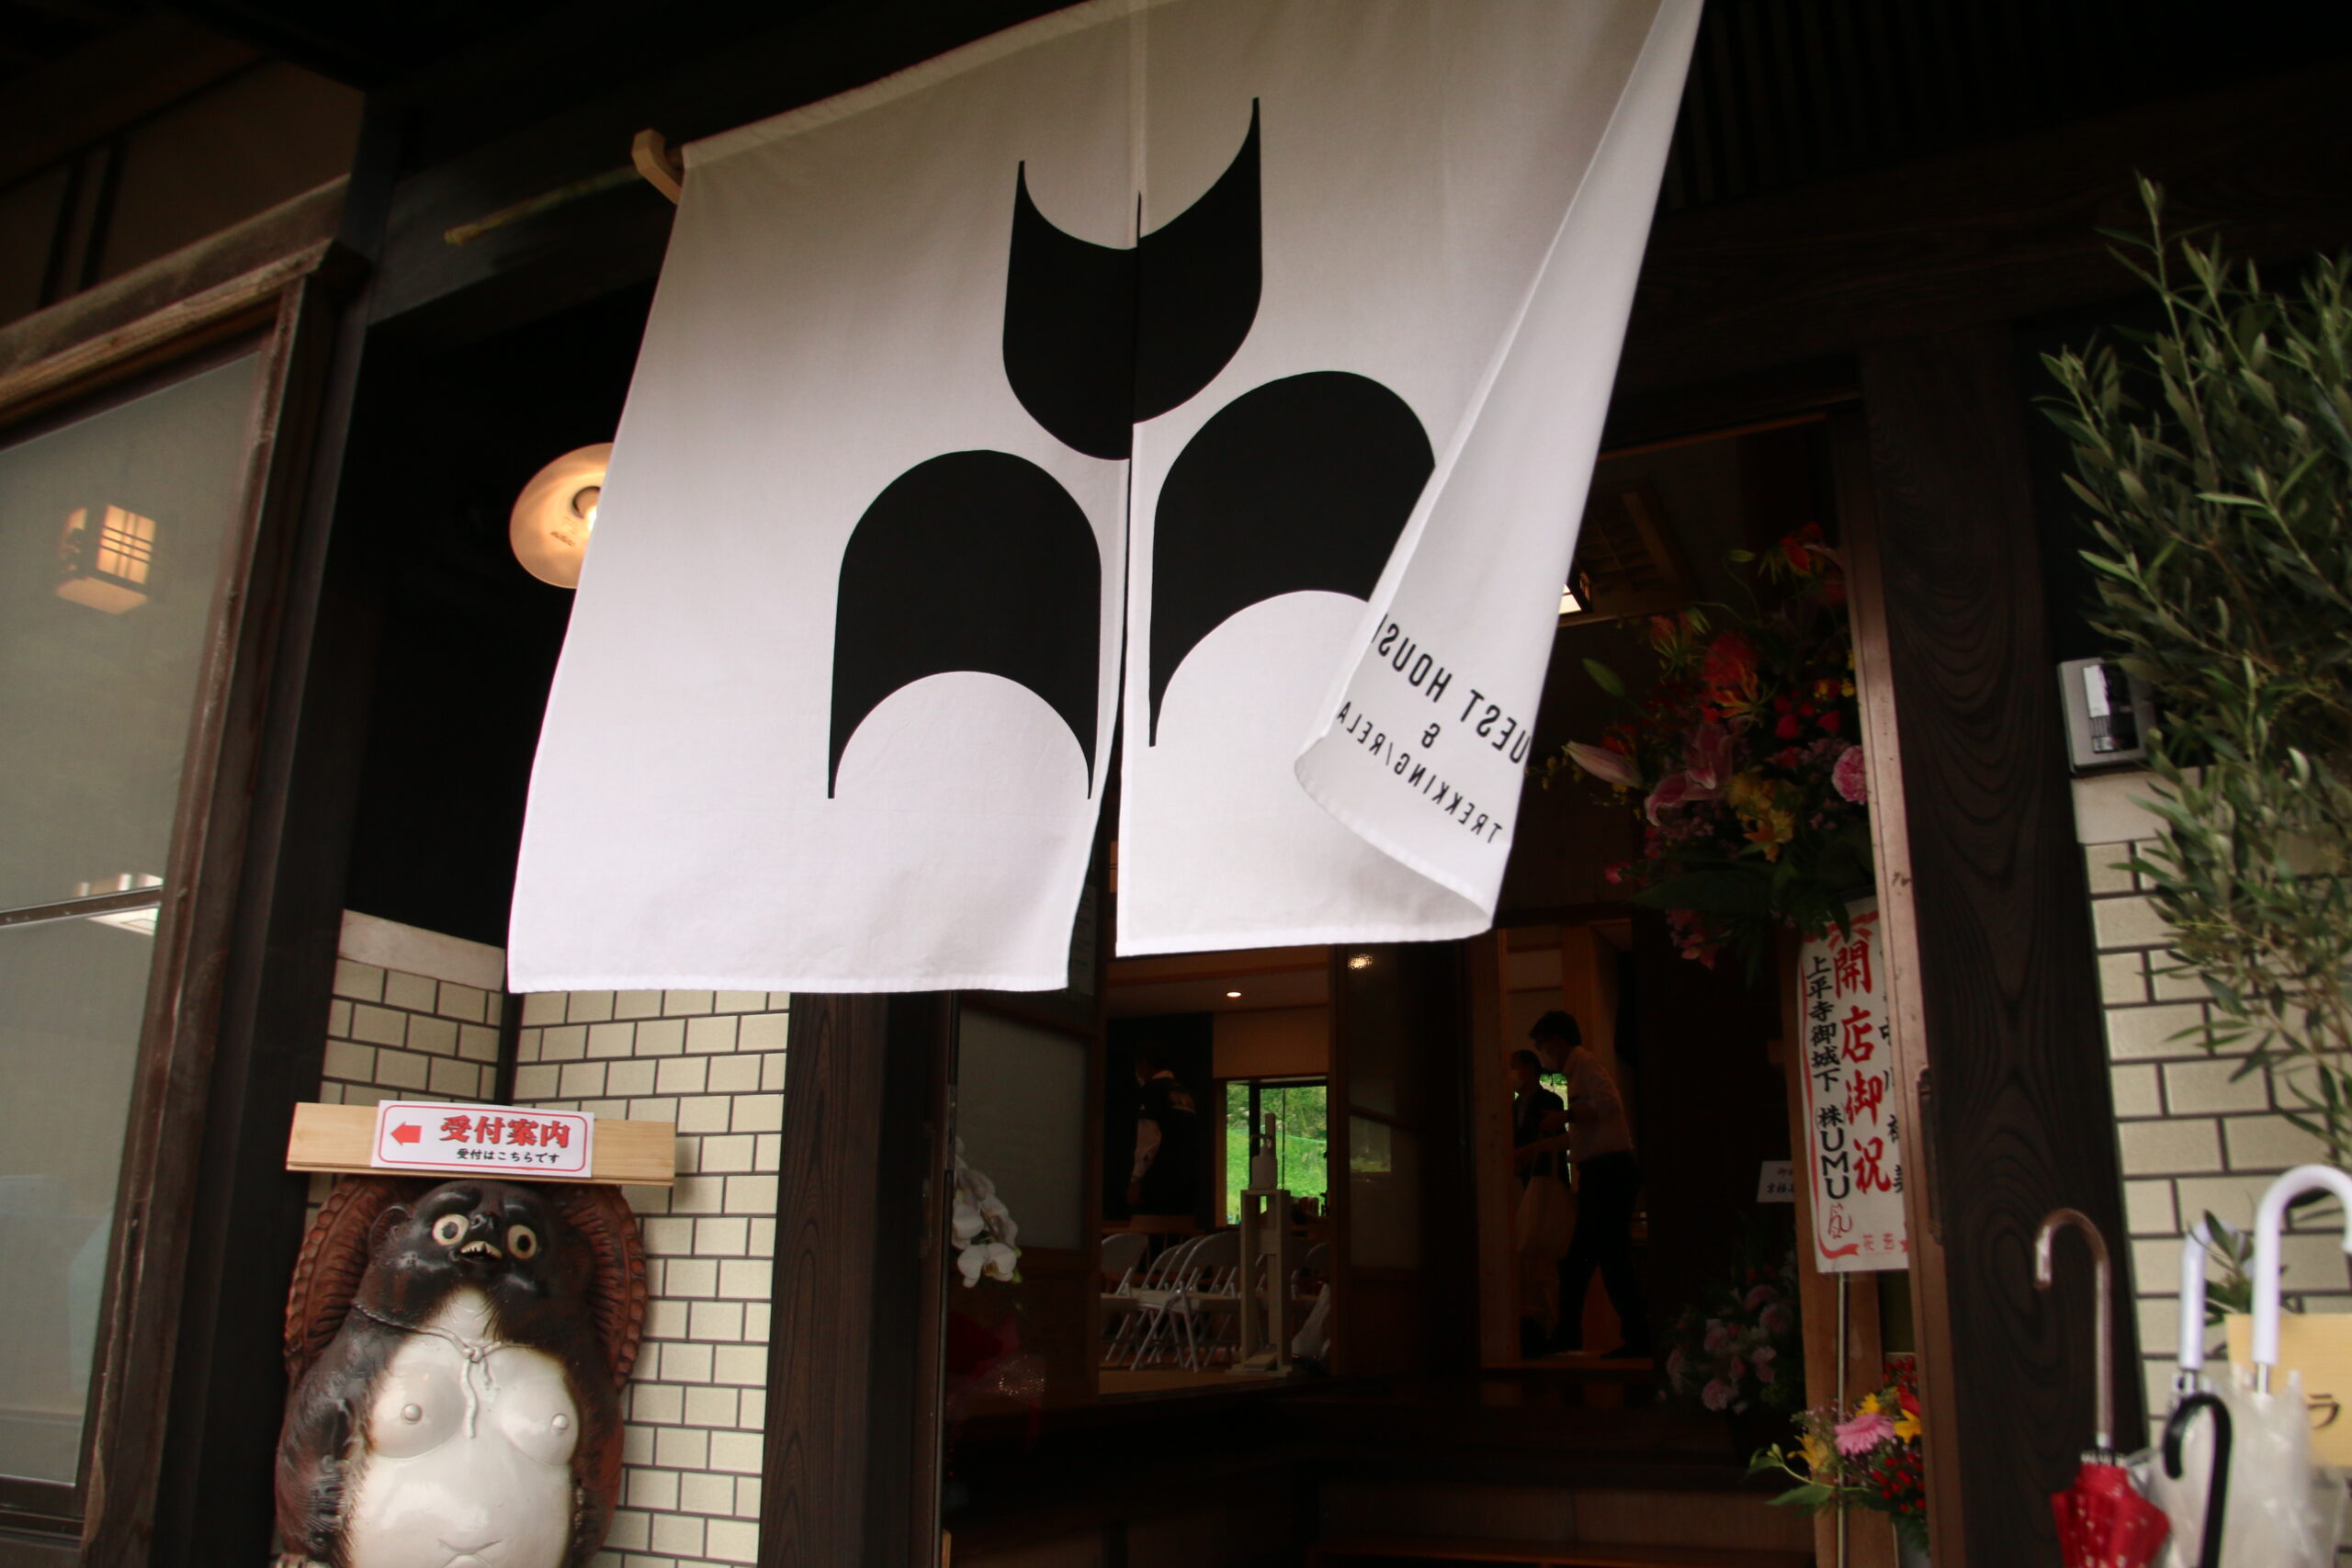 ゲストハウスうむプレオープンイベント「京極家の昼下がり」無事に終了しました！